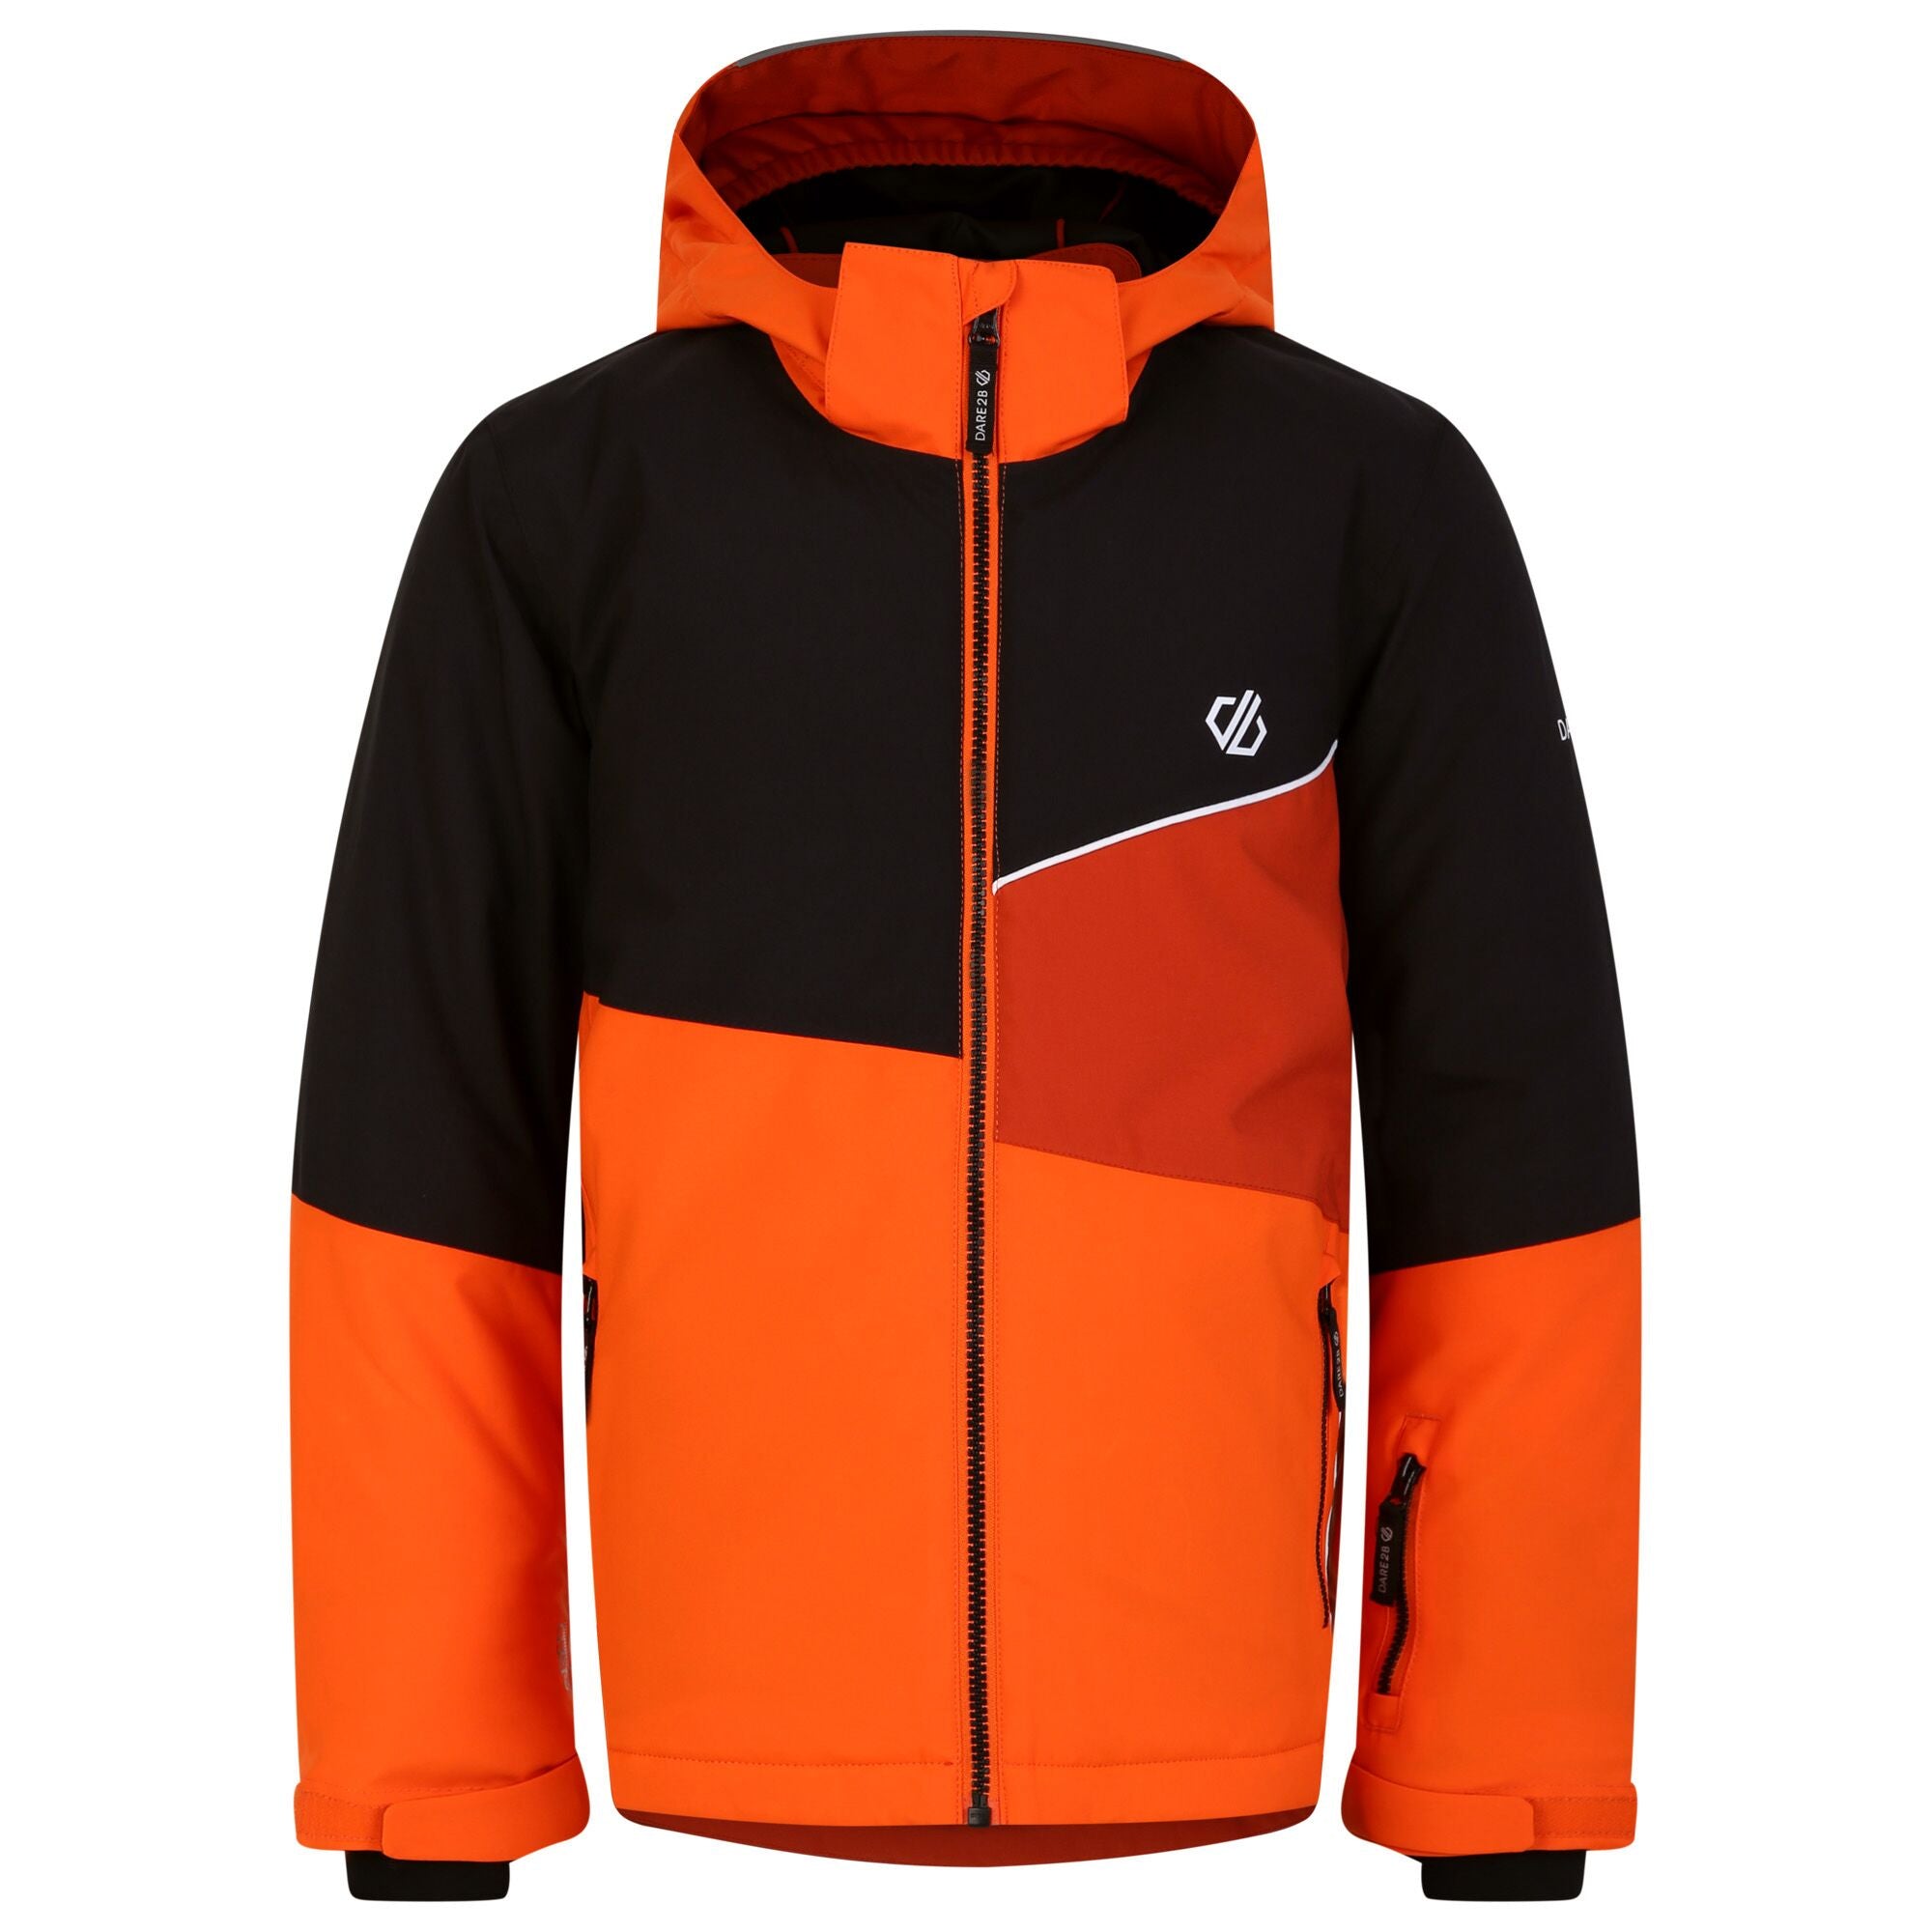 Steazy Jacket - Kinder Skijacke | mit reflektierenden Details - Orange-Schwarz  - Kinder Skijacke - €62,99 - Sportrabatt